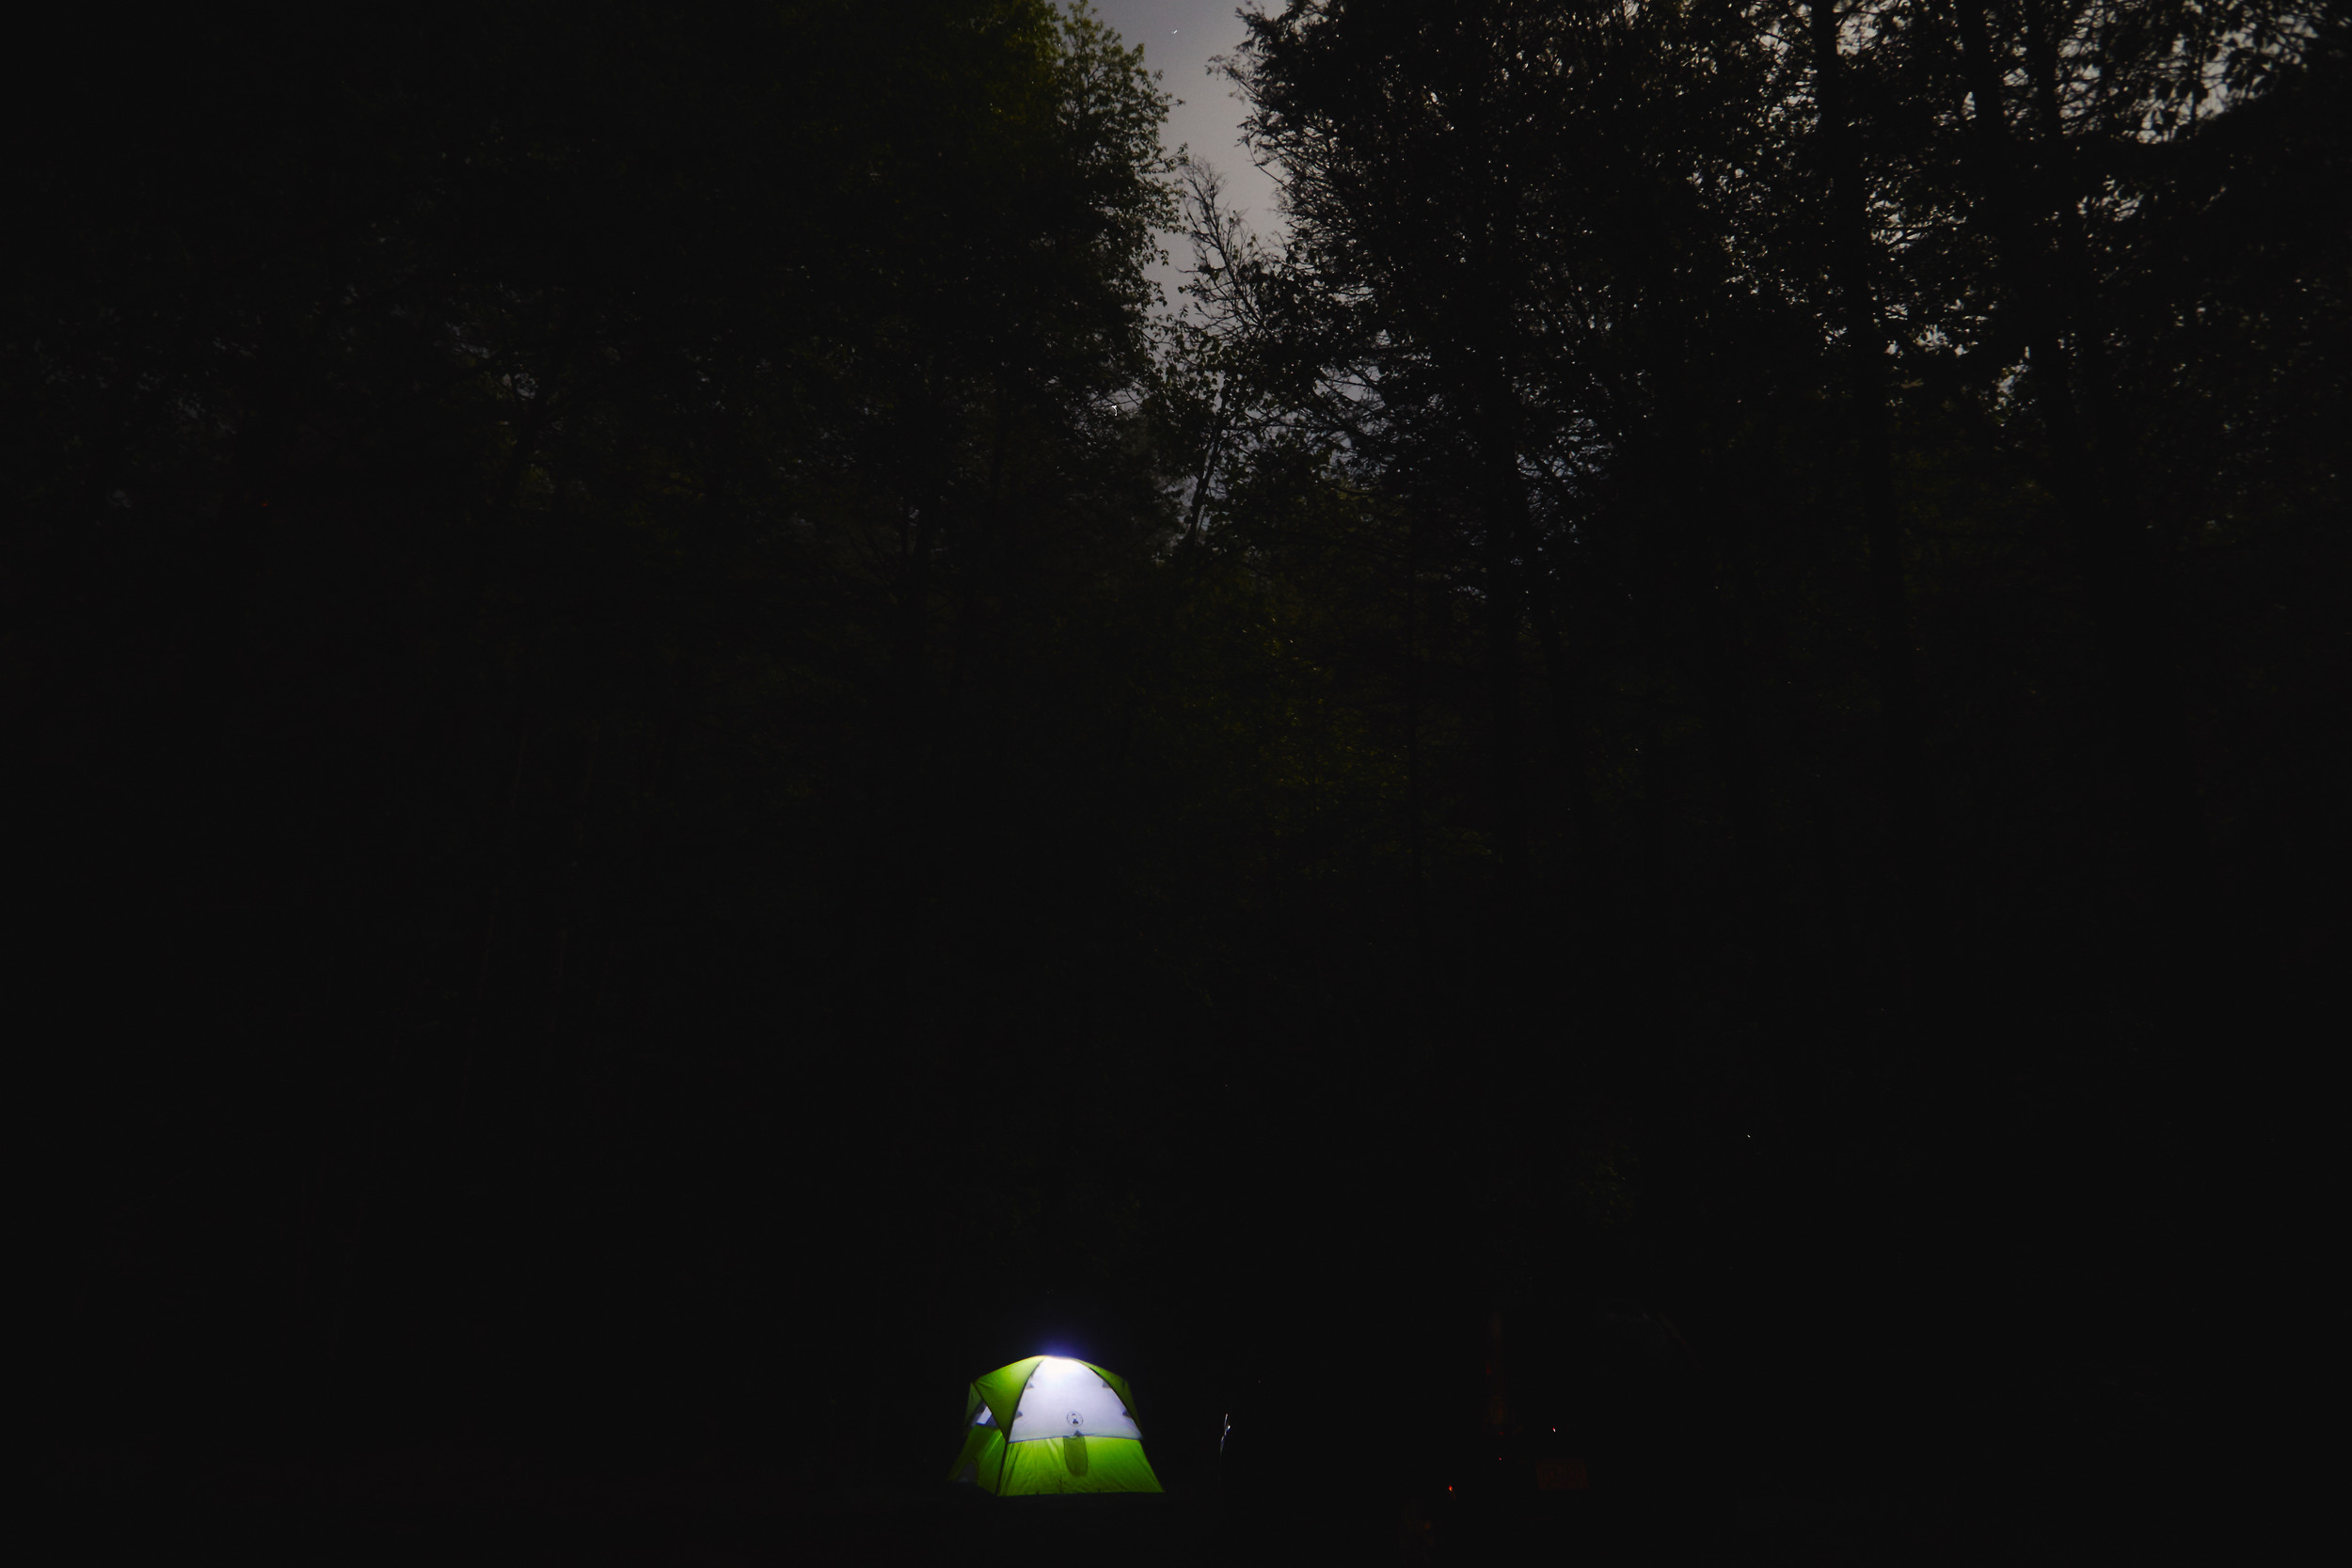 Helen_Georgia_2014_Camping_663.jpg